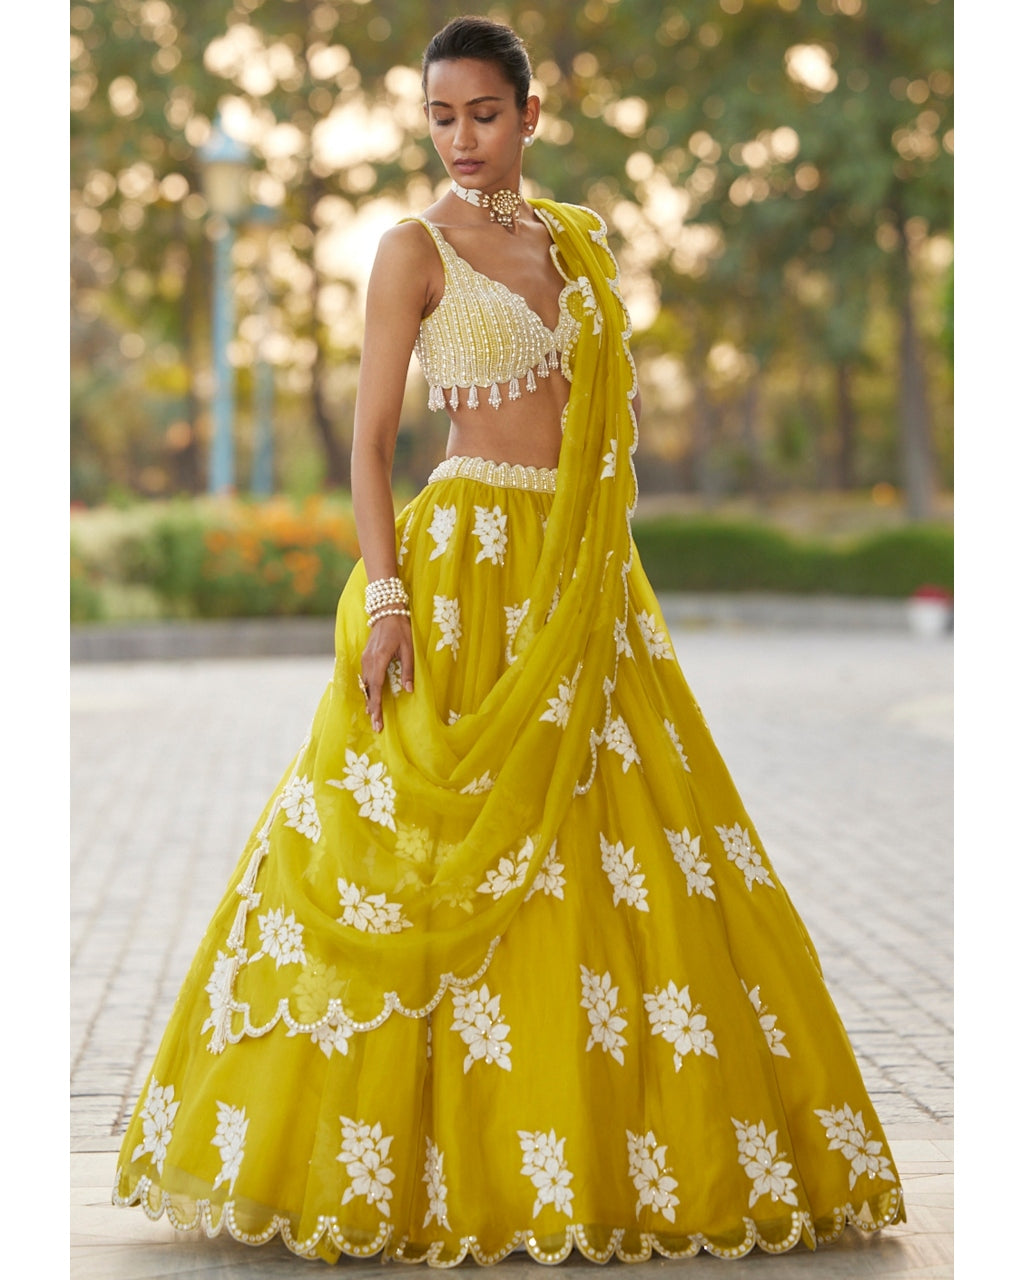 Multicolor Cotton,Lace Beautiful Bridal Lingerie Set at Rs 105/set in Delhi